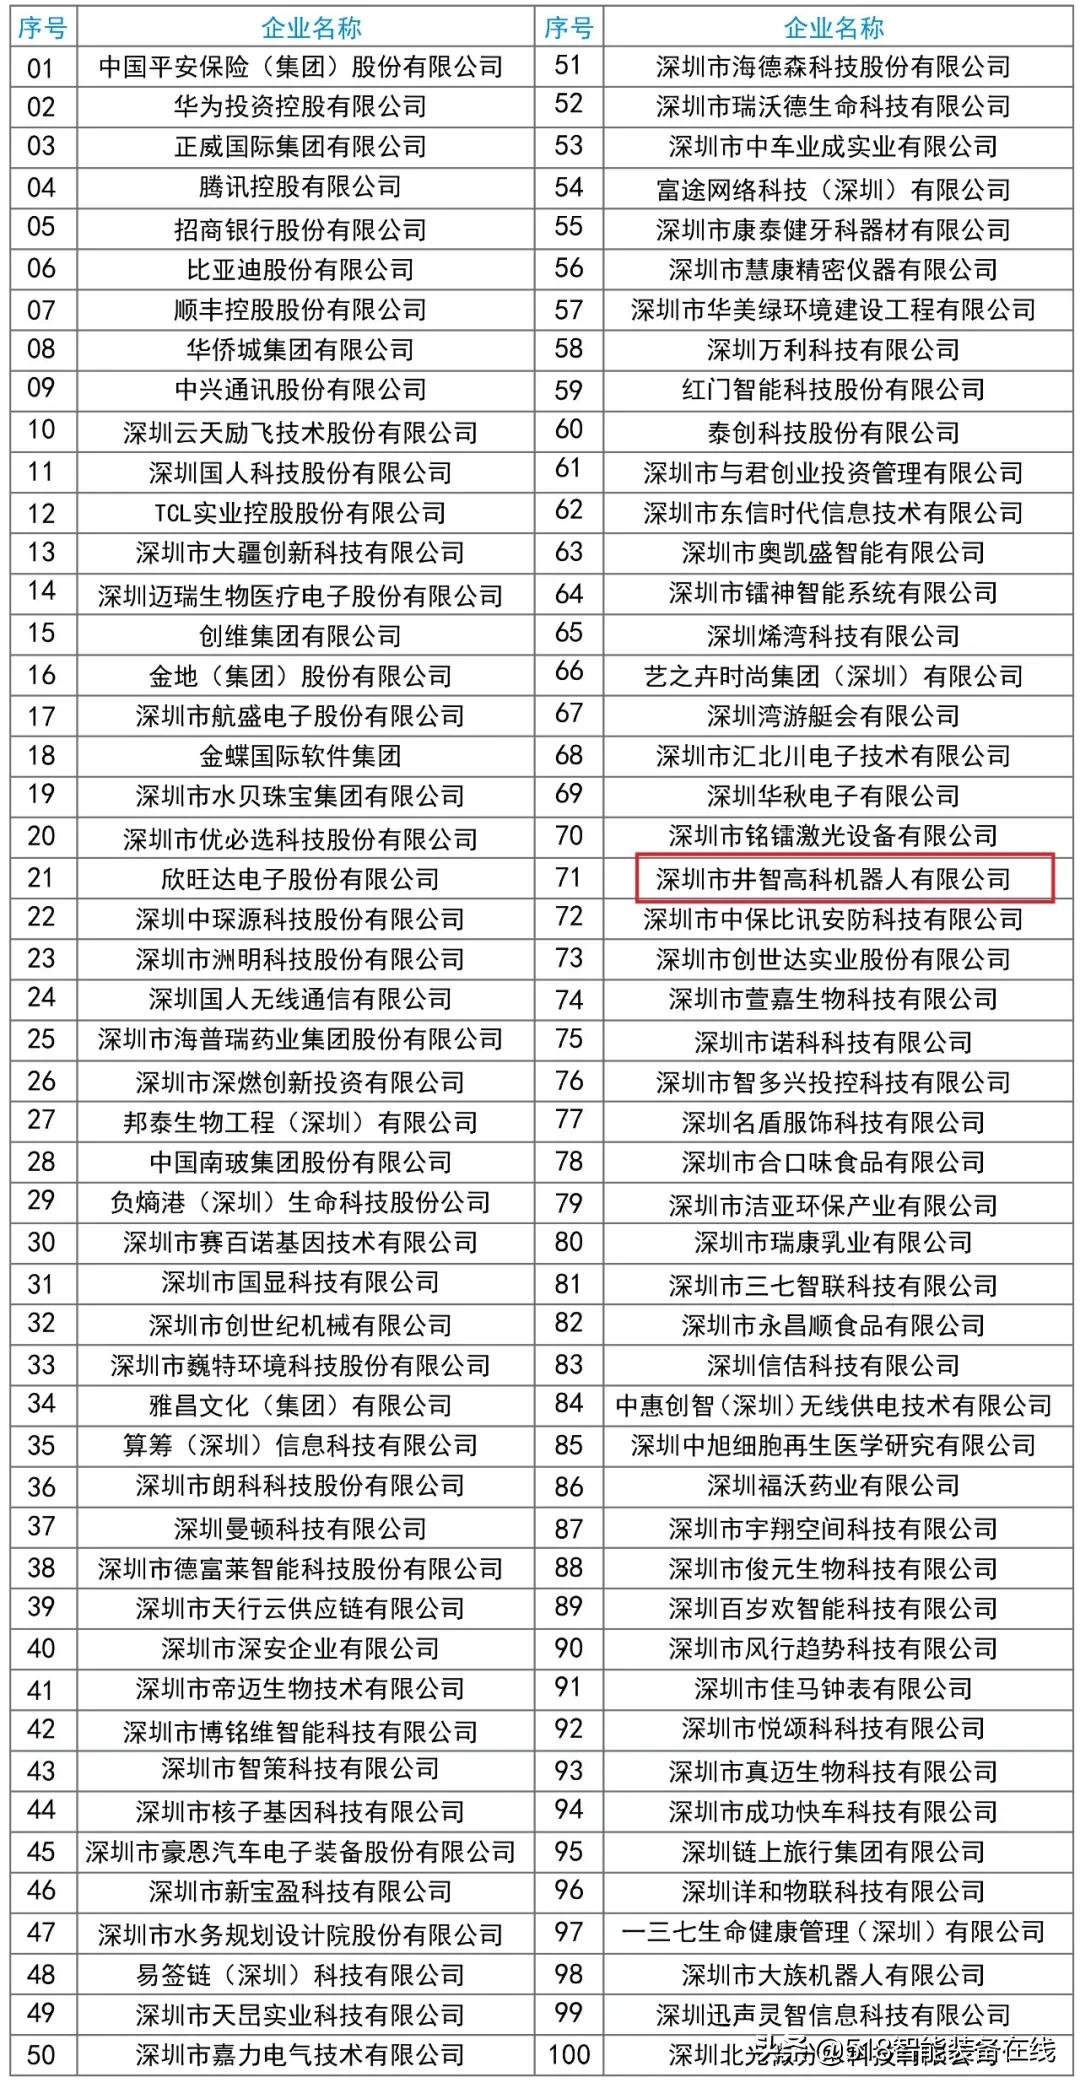 祝贺井智机器人荣登“深圳创新企业100强”榜单